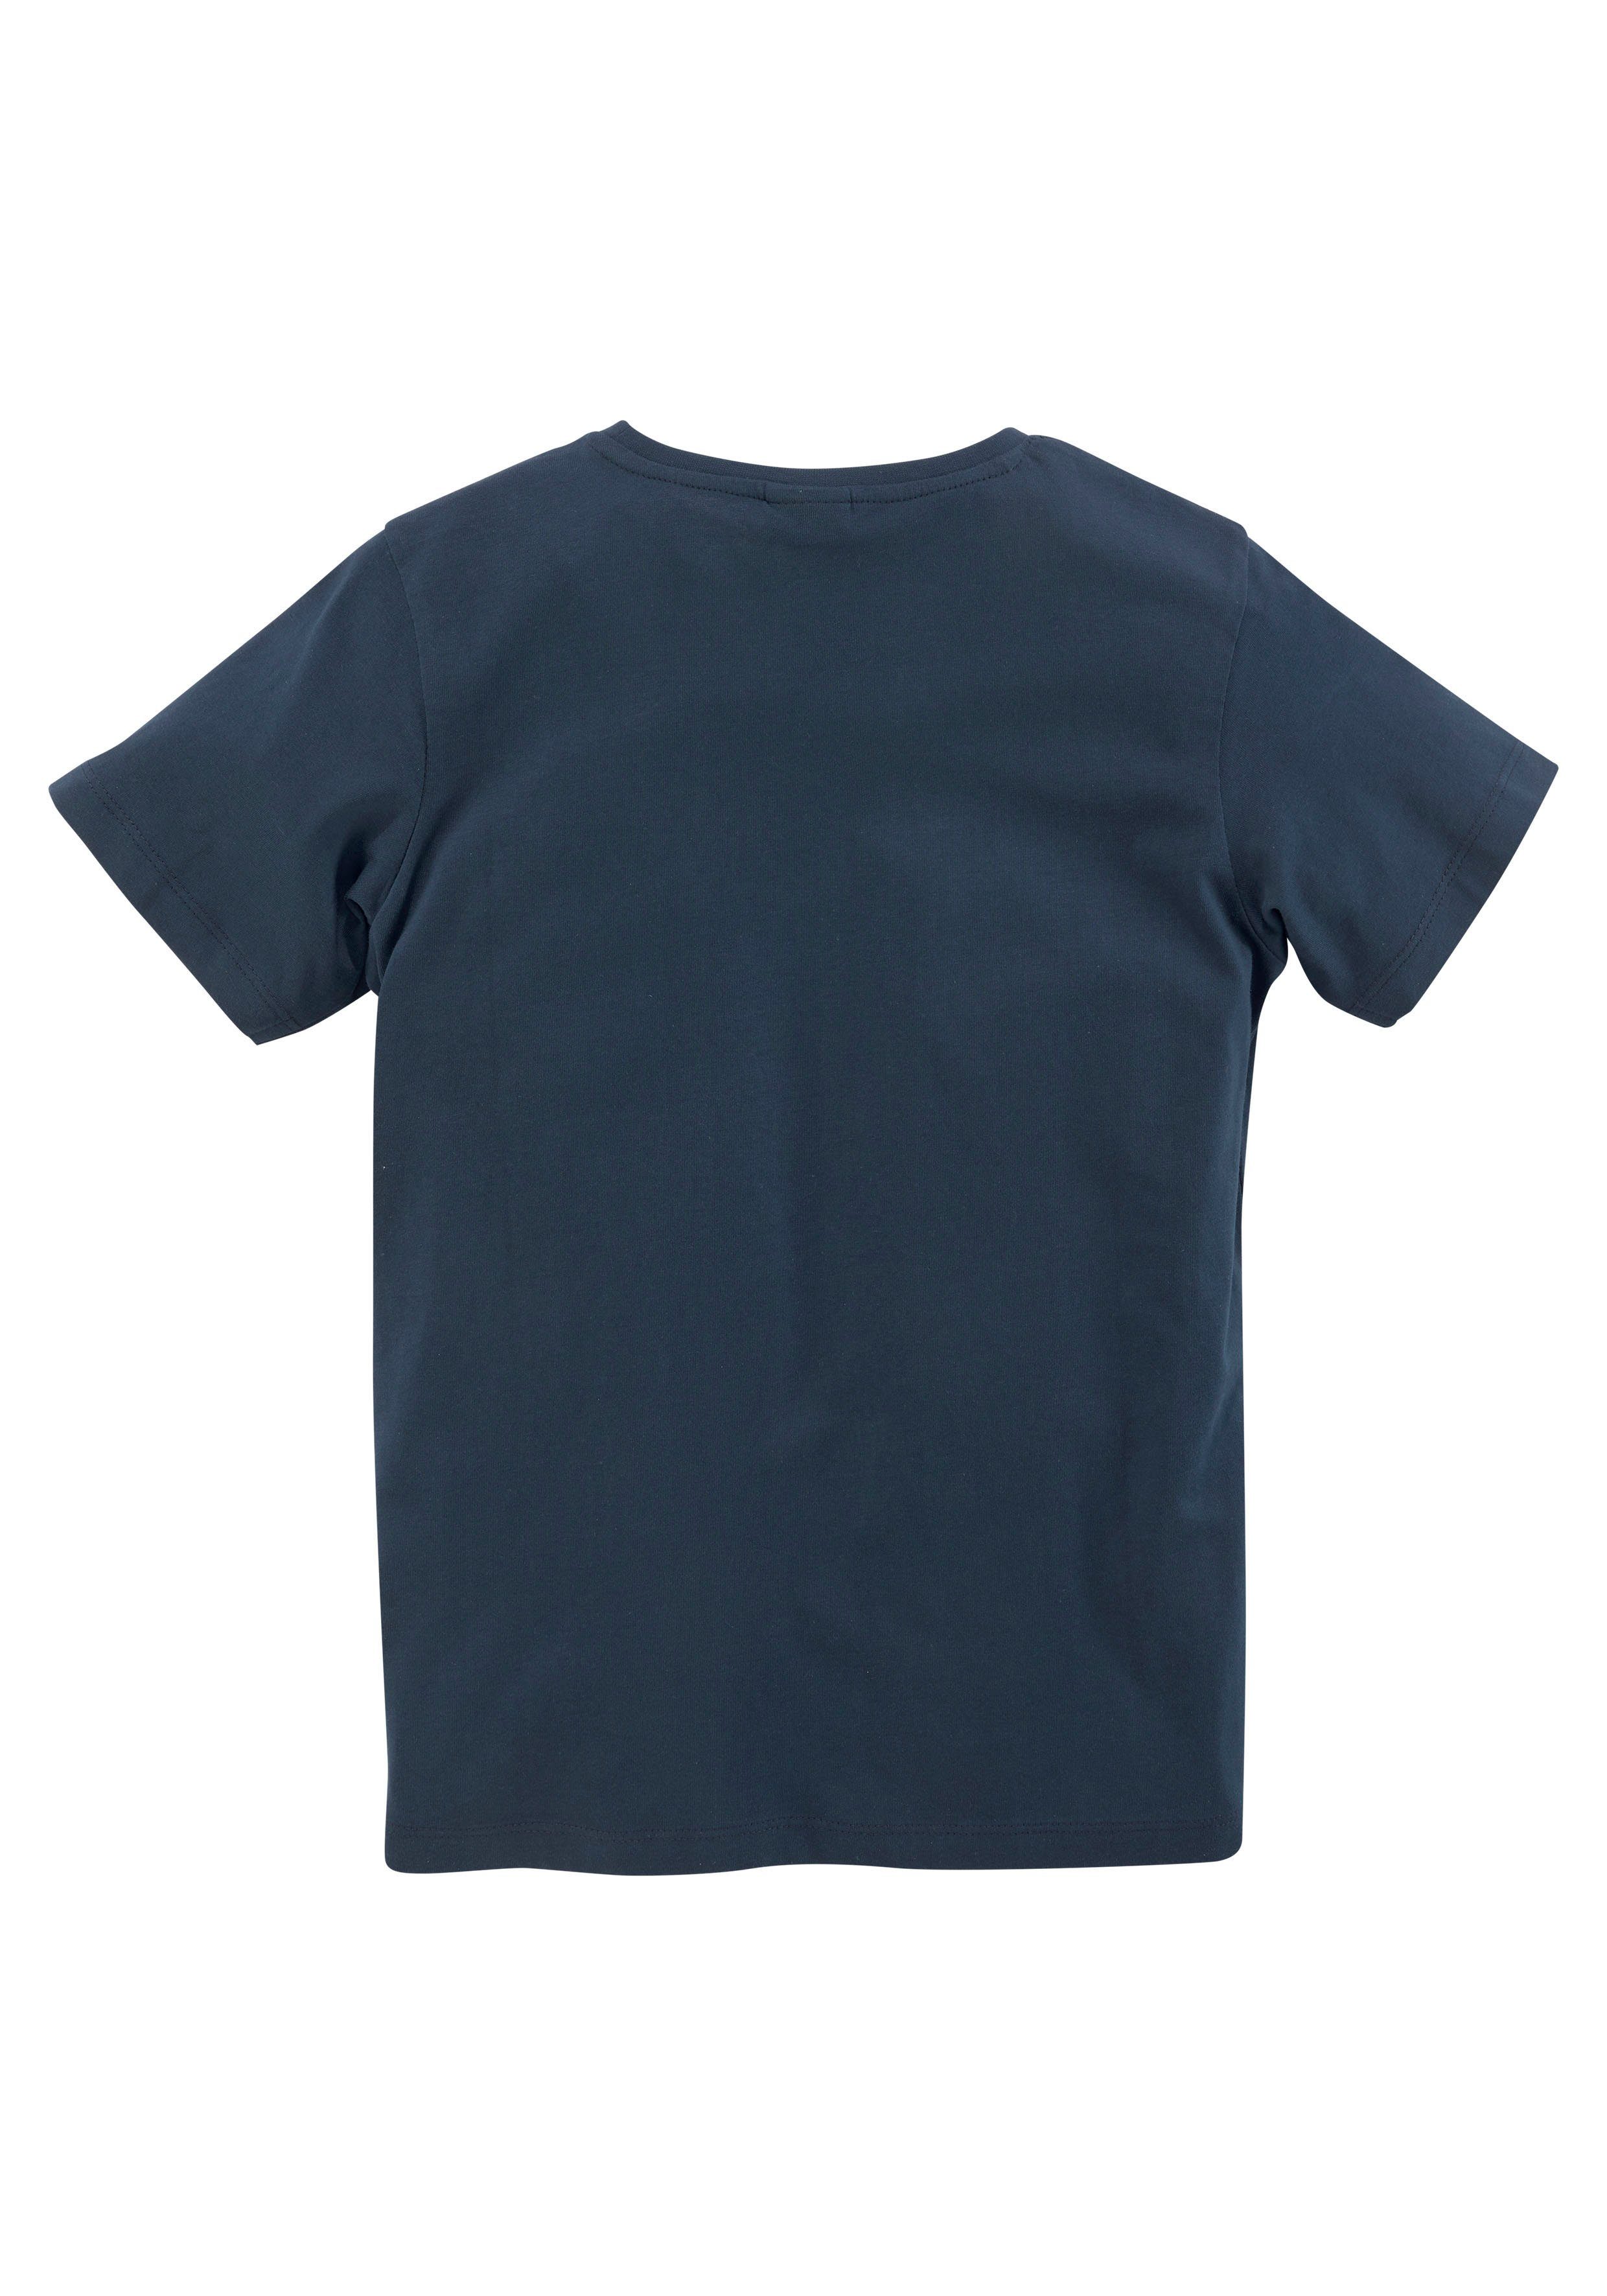 Kinder Teens (Gr. 128 - 182) KIDSWORLD T-Shirt ALLES BANANE